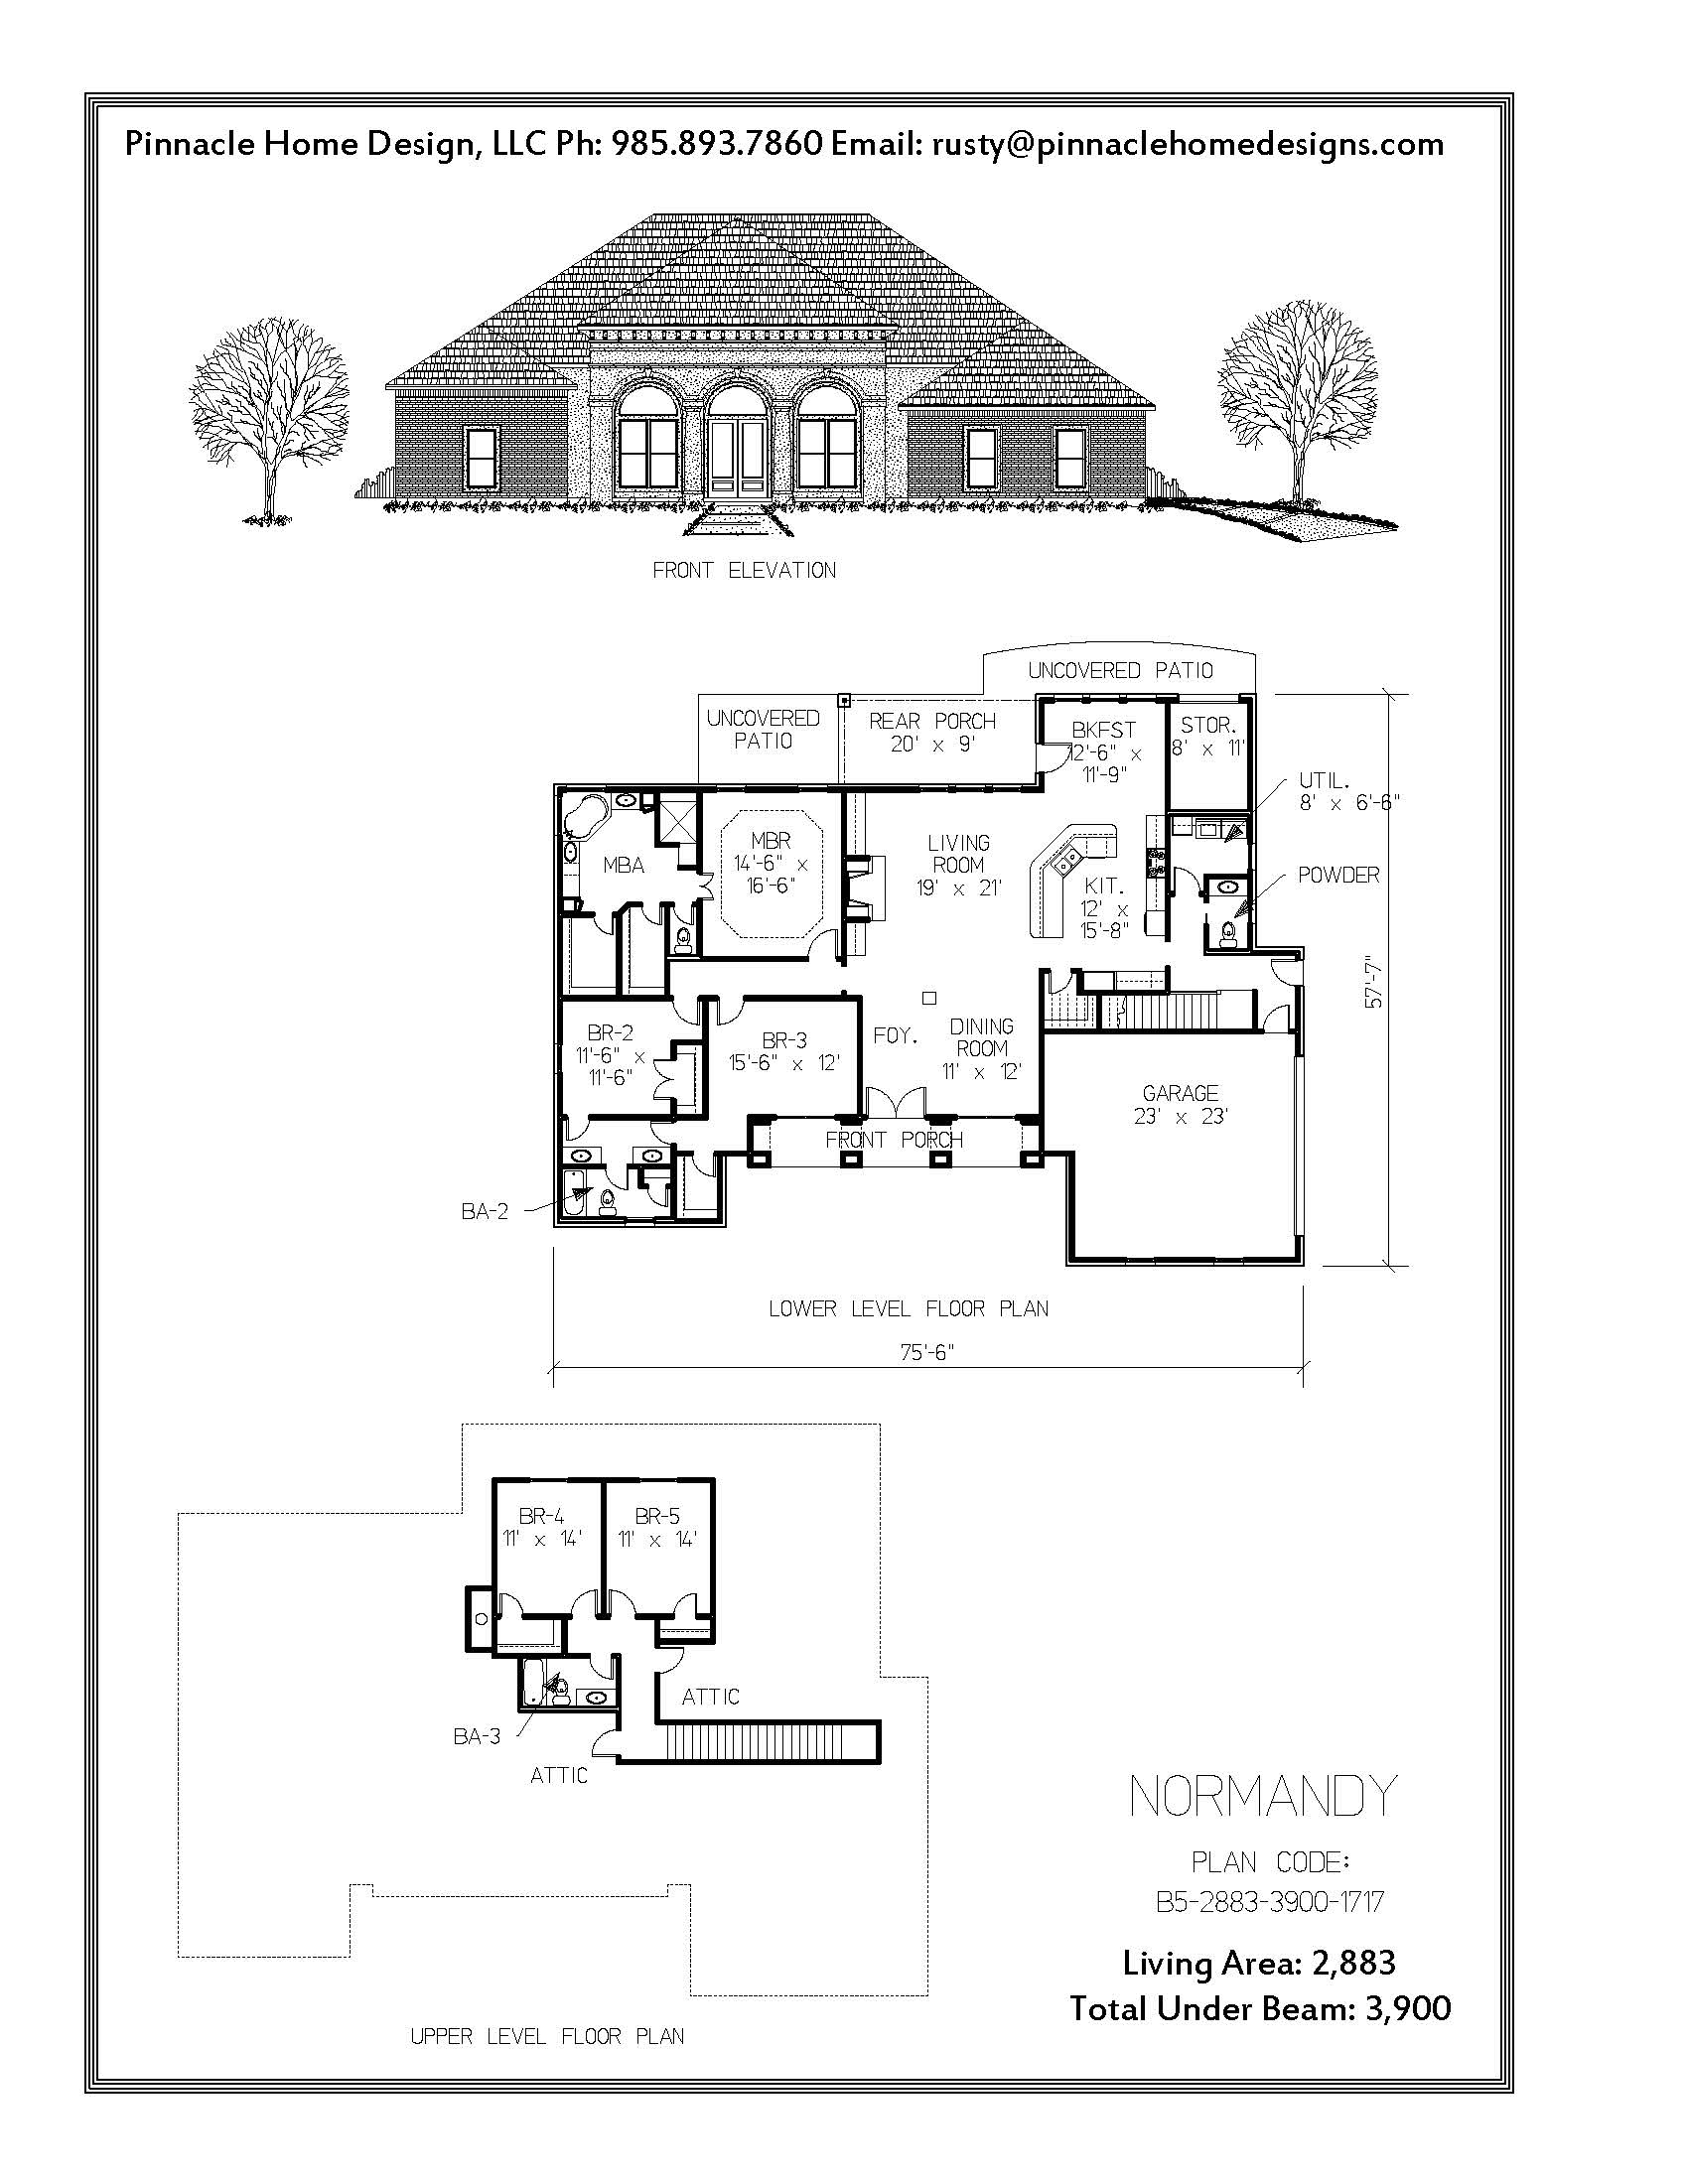 Pinnacle Home Designs The Normandy Floor Plan Pinnacle